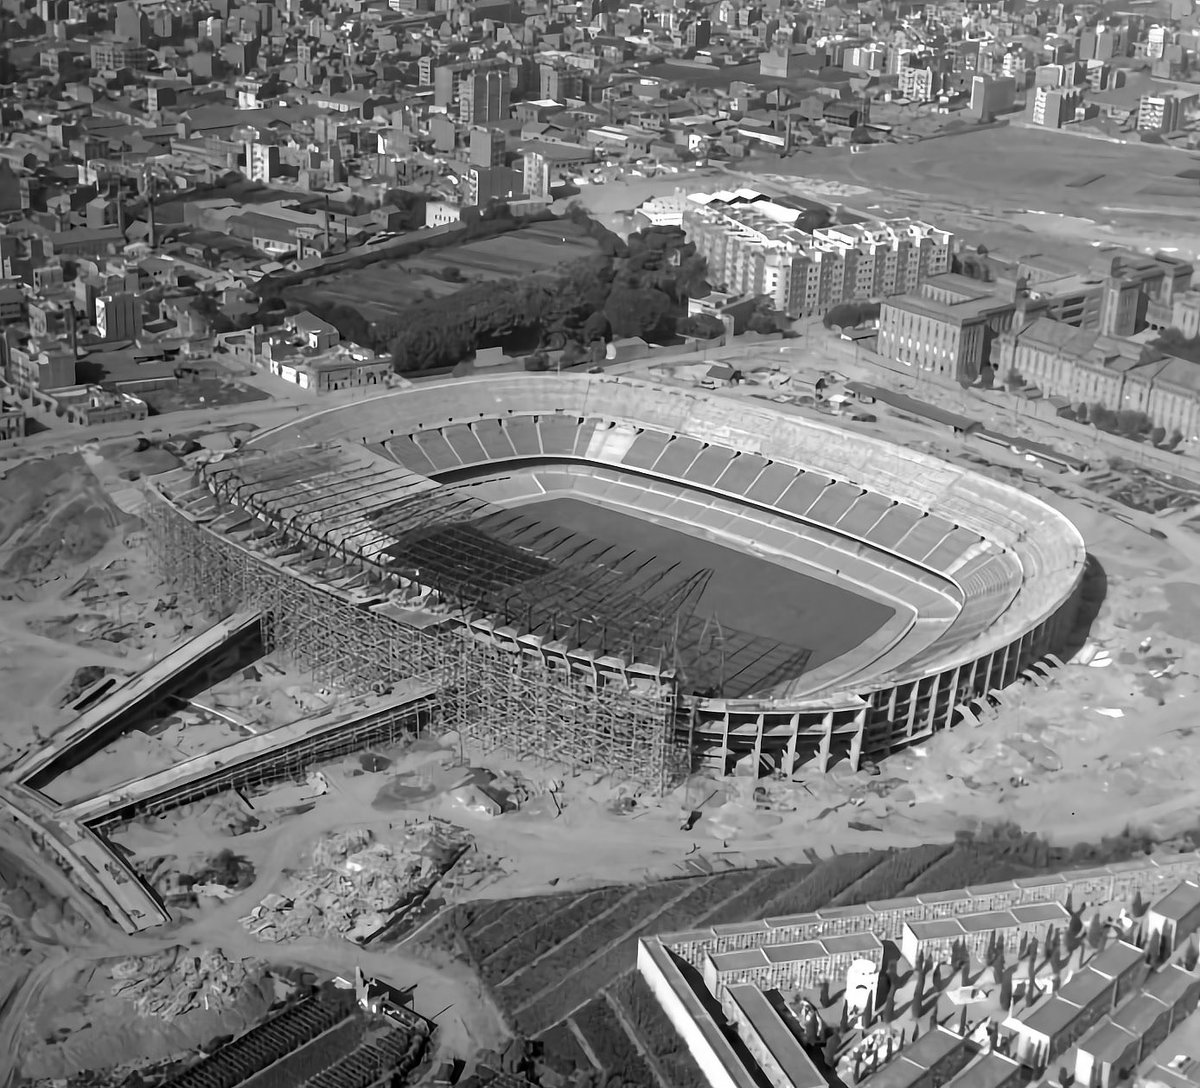 Sân vận động Camp Nou – Tất cả những gì cần biết về sân nhà của Barca 2